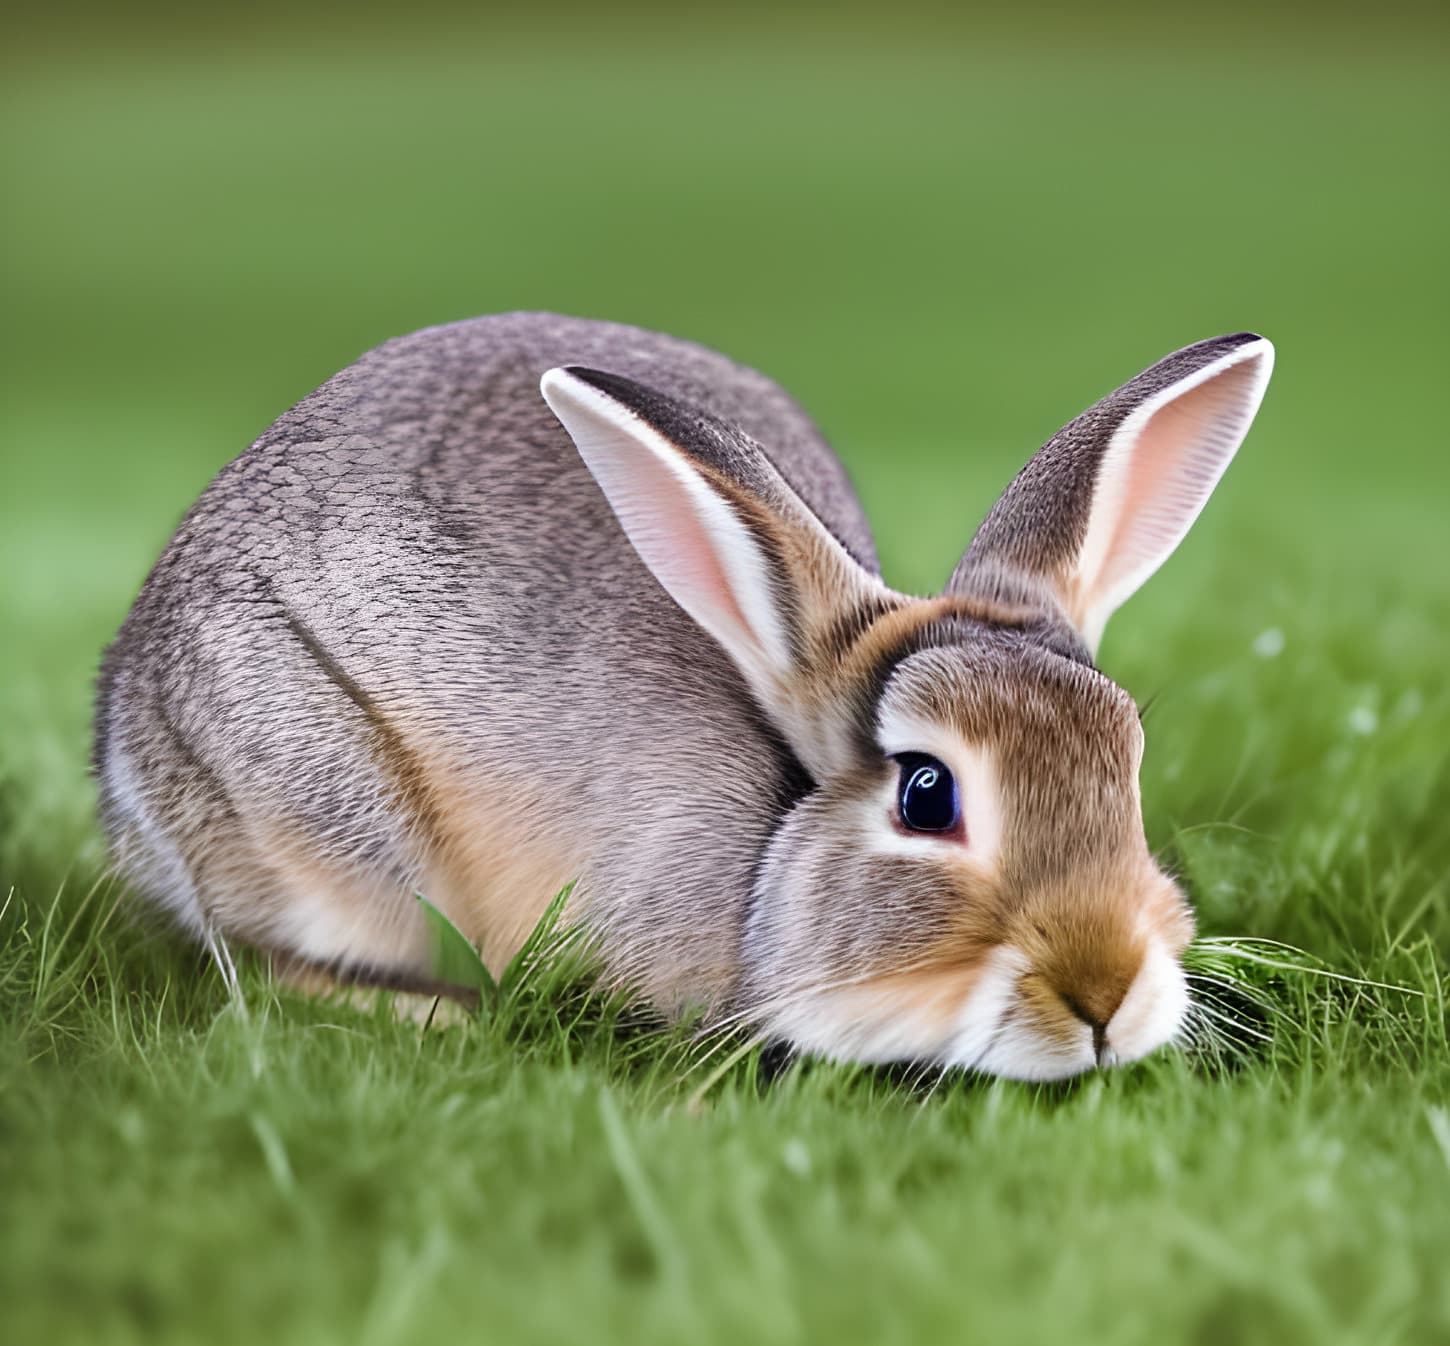 chú thỏ, đáng yêu, thỏ, ký-đóng, Bãi cỏ, cỏ, động vật gặm nhấm, đầu